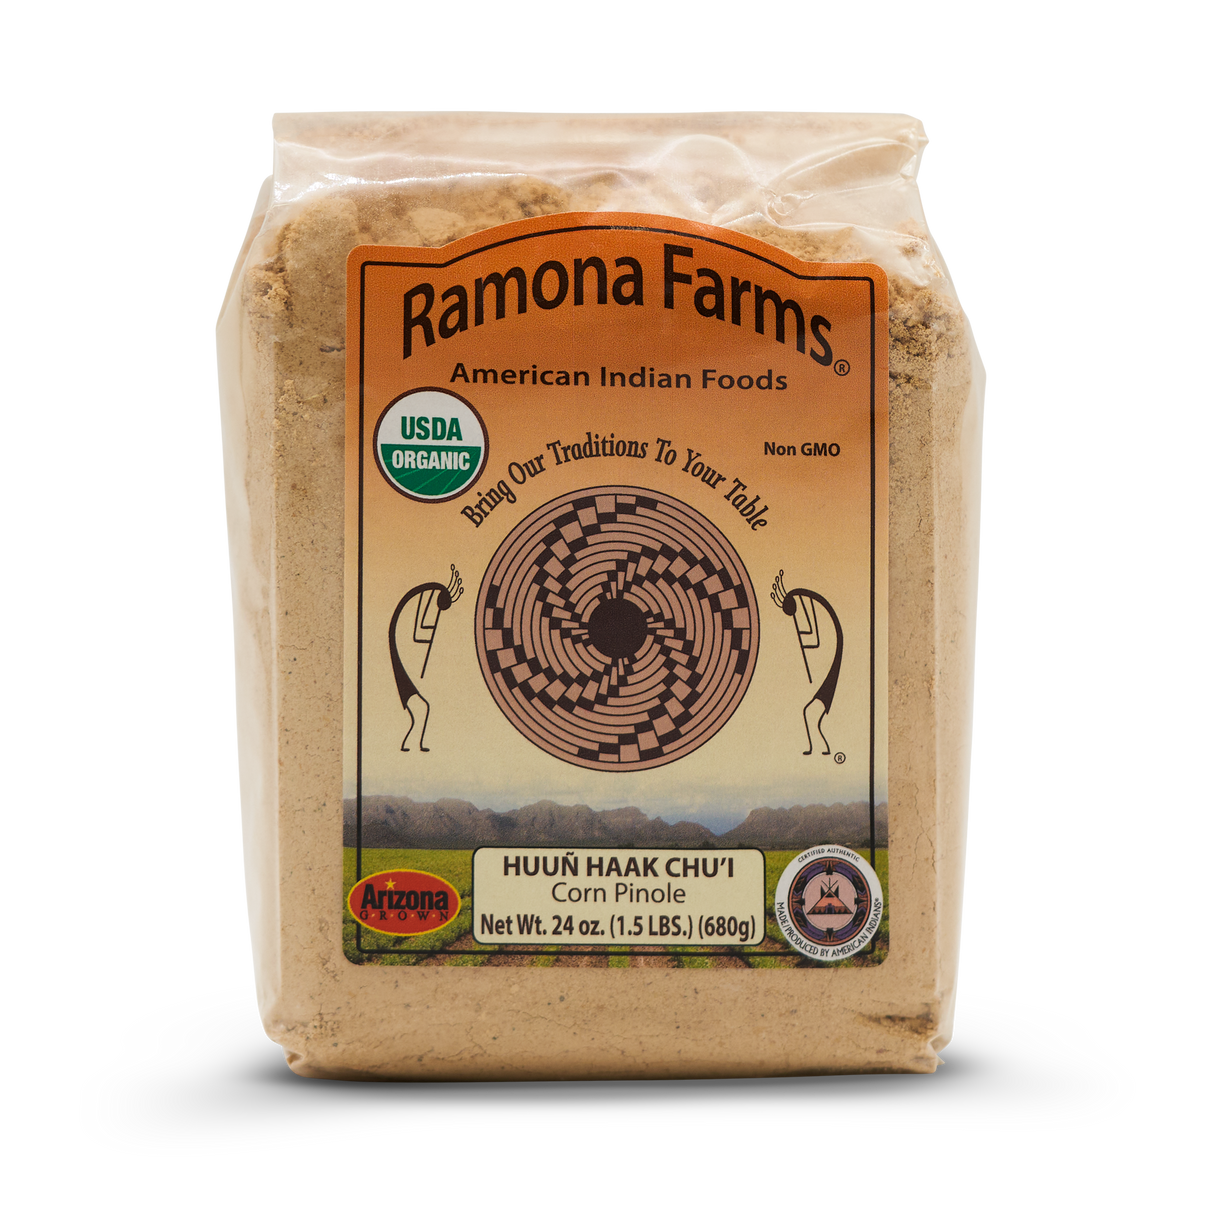 Ramona Farms Corn Pinole (Huun Haak Chu'i)